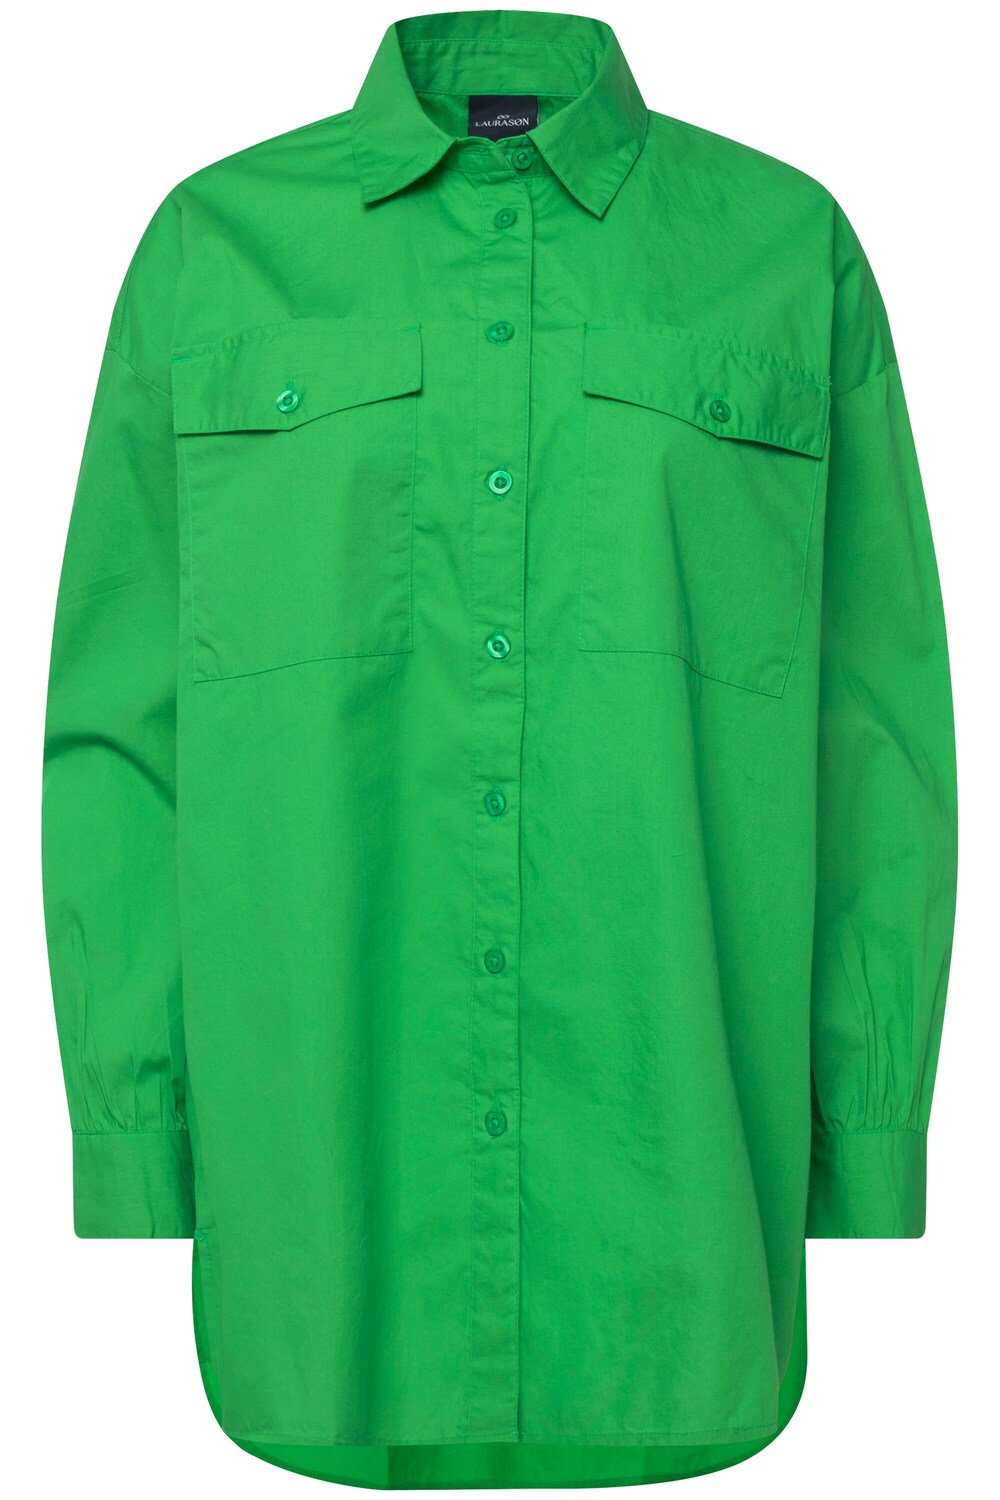 Блузка Laurasøn, зеленый блузка laurasøn графит